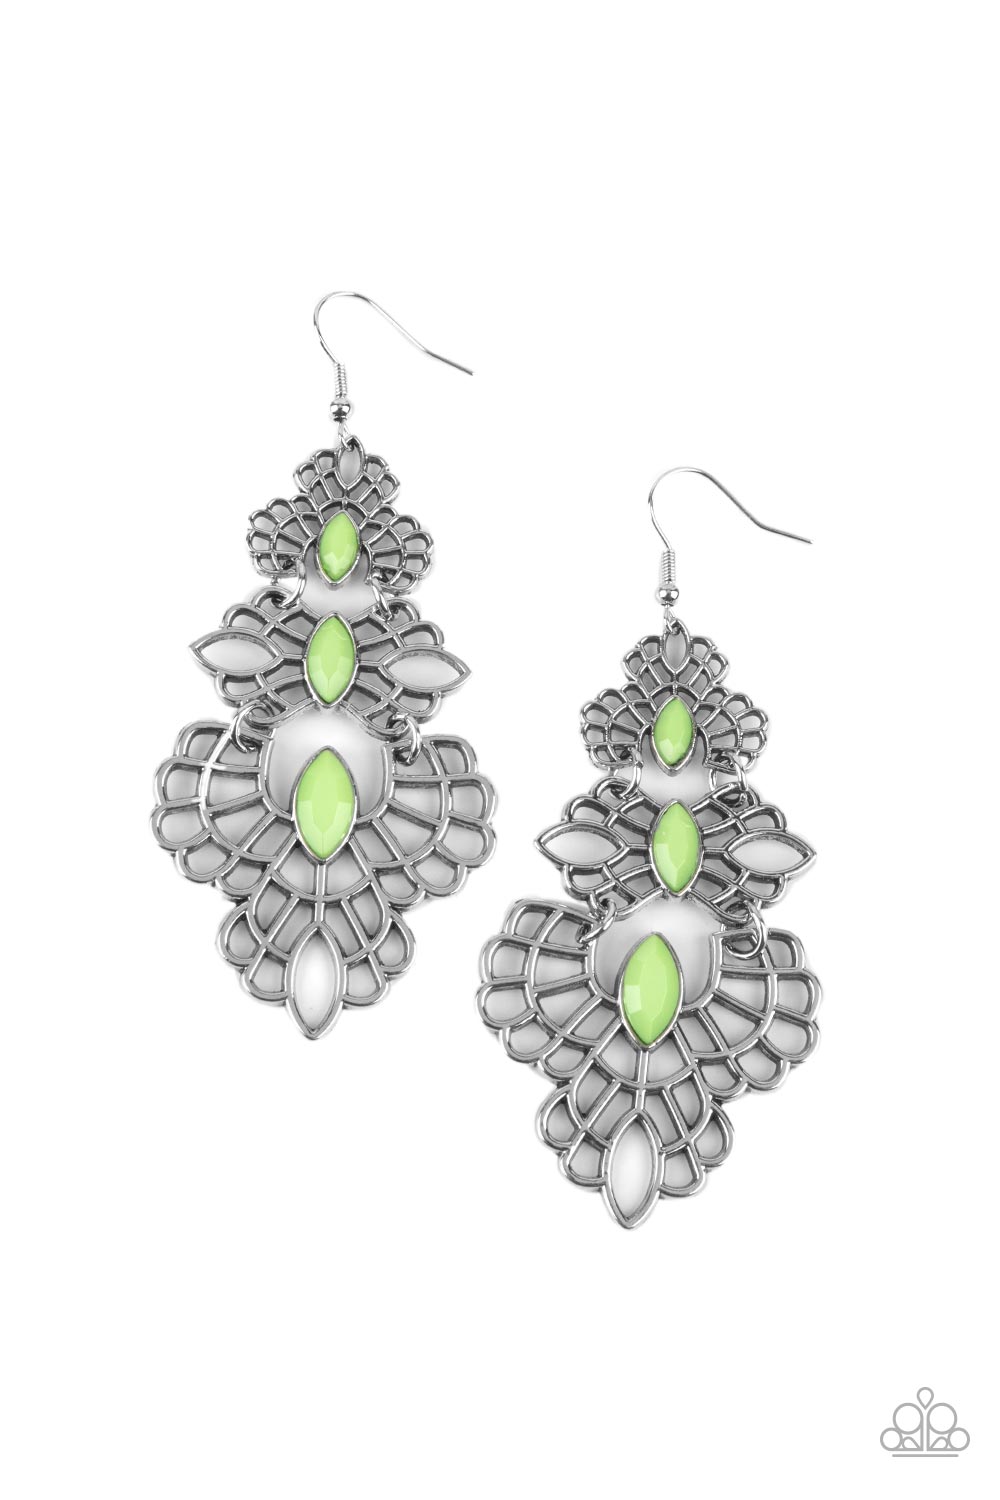 Flamboyant Frills - Green Paparazzi Earrings